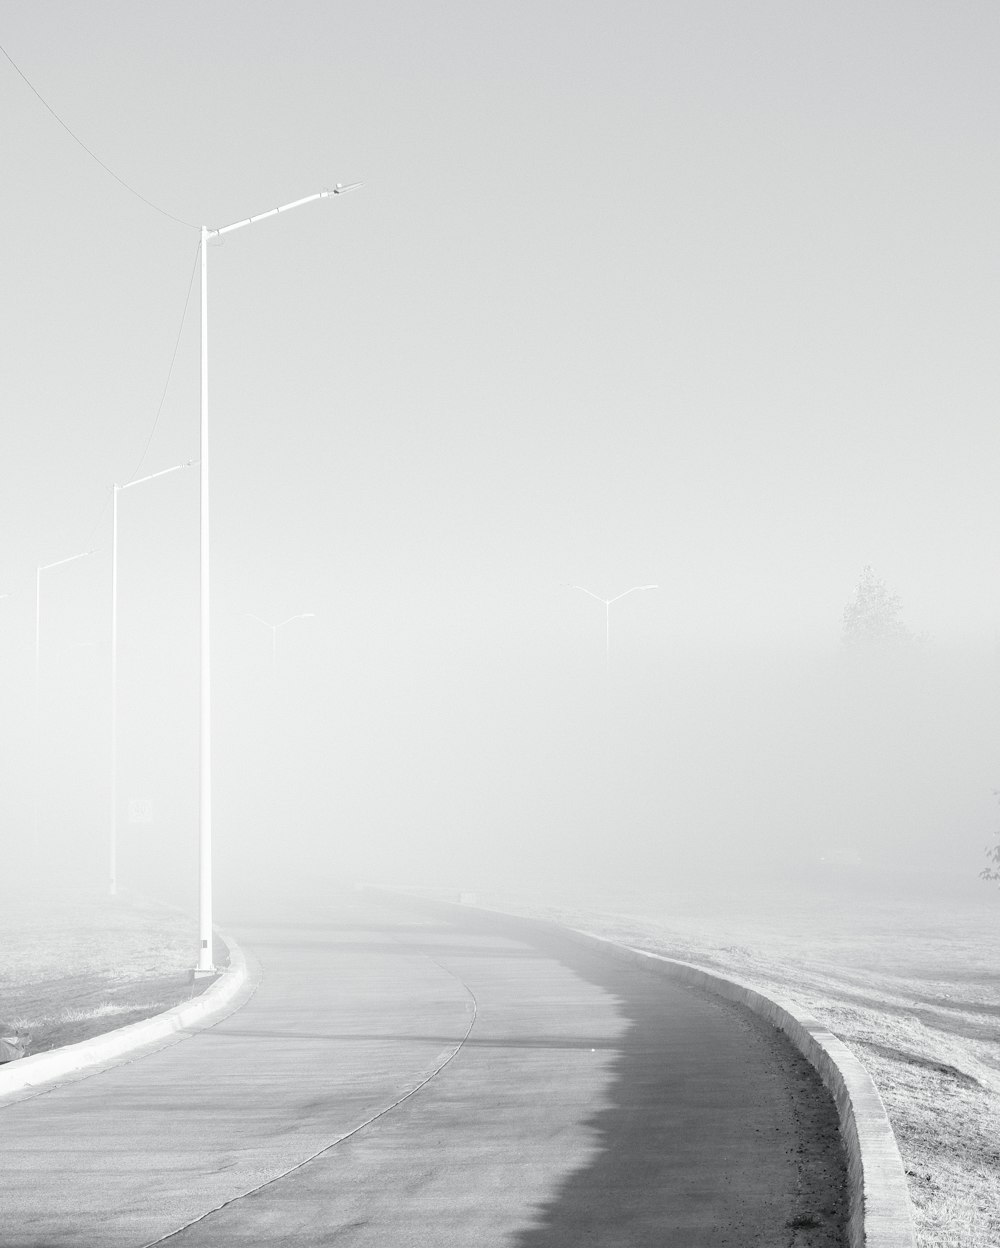 霧のかかった道路の白黒写真